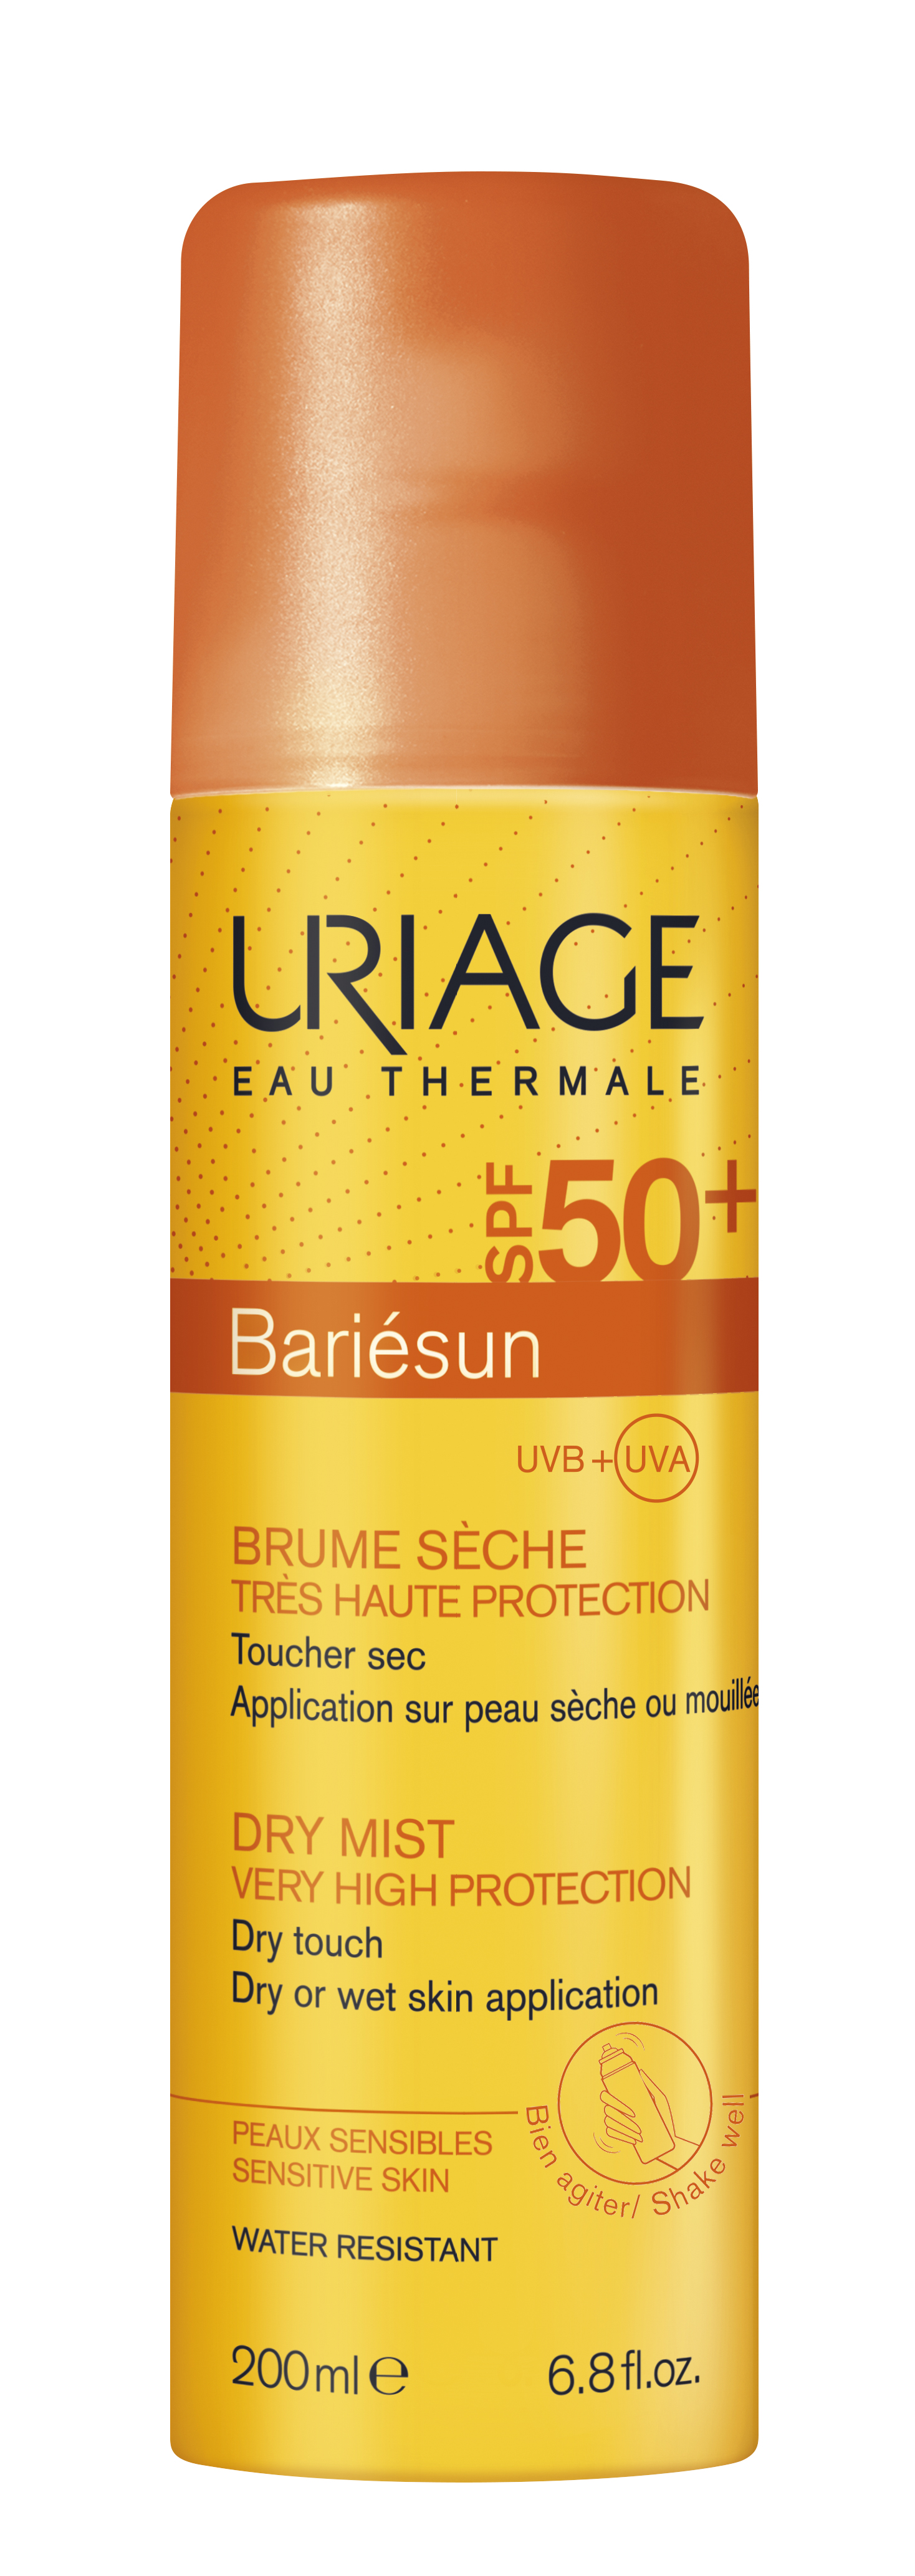 Produse cu SPF pentru corp - BARIESUN Spray uscat protectie solara SPF50+ 200ml, sinapis.ro